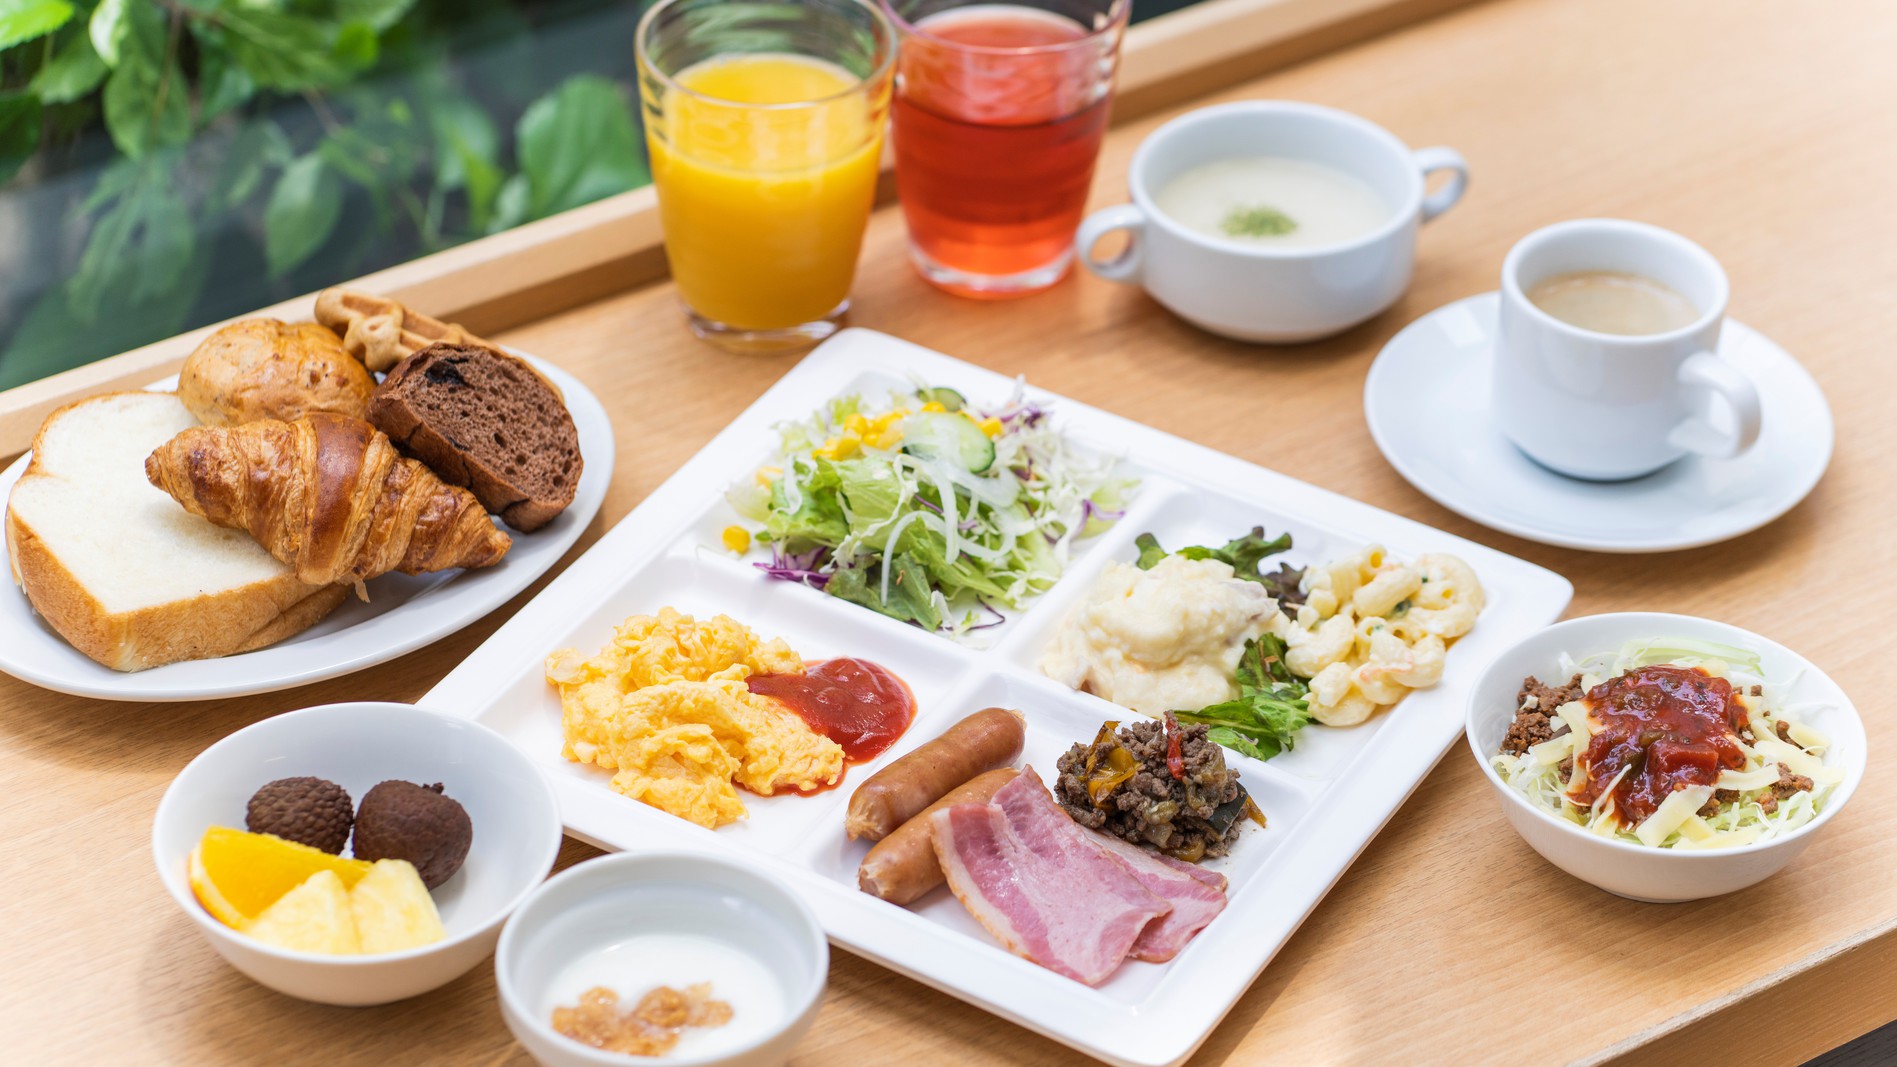 沖縄料理を含む和洋朝食ブッフェ付プラン